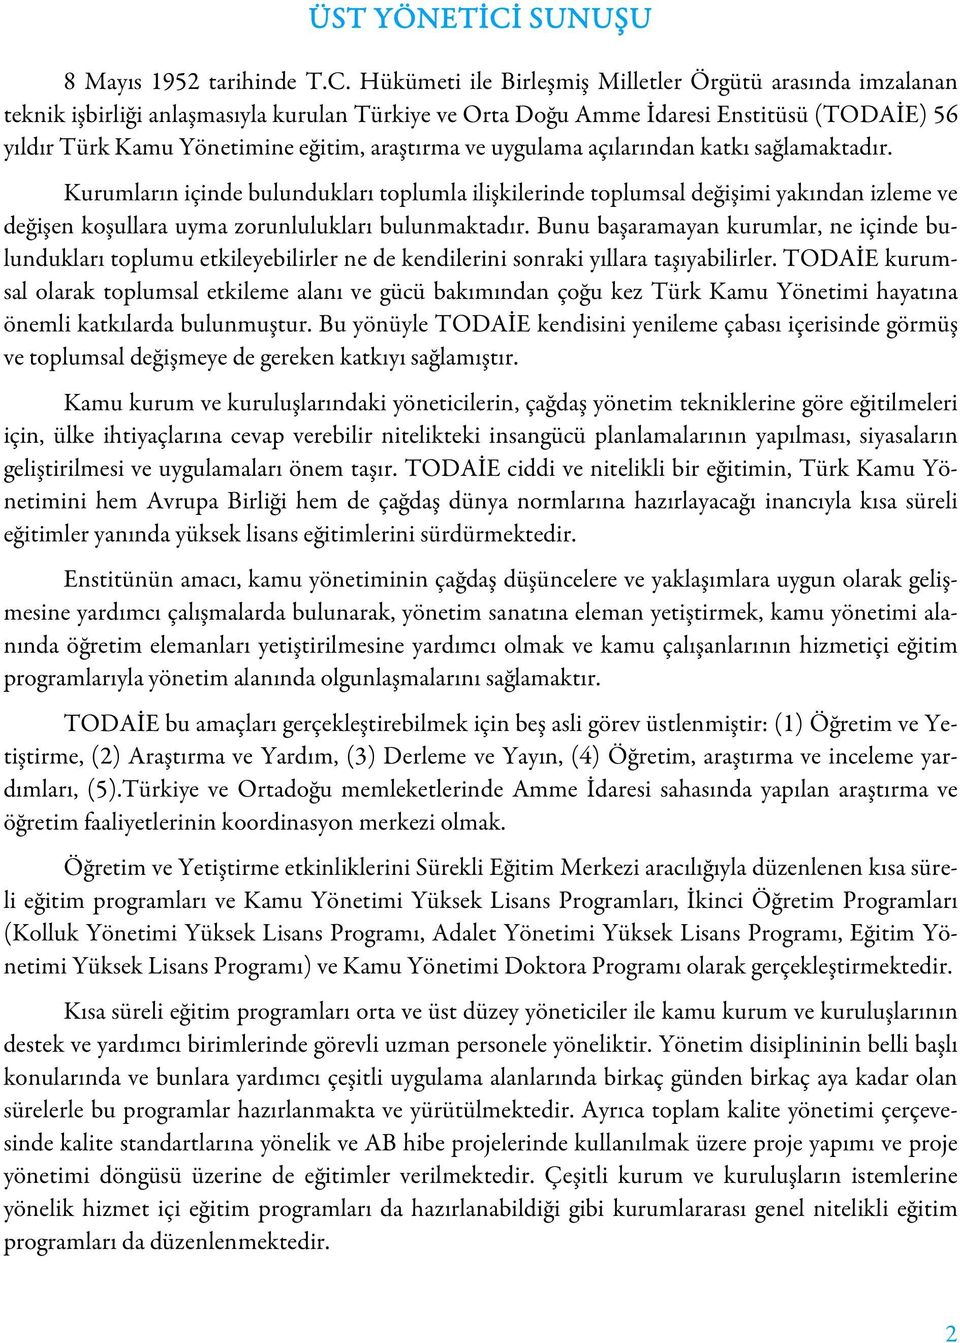 Hükümeti ile Birleşmiş Milletler Örgütü arasında imzalanan teknik işbirliği anlaşmasıyla kurulan Türkiye ve Orta Doğu Amme İdaresi Enstitüsü (TODAİE) 56 yıldır Türk Kamu Yönetimine eğitim, araştırma